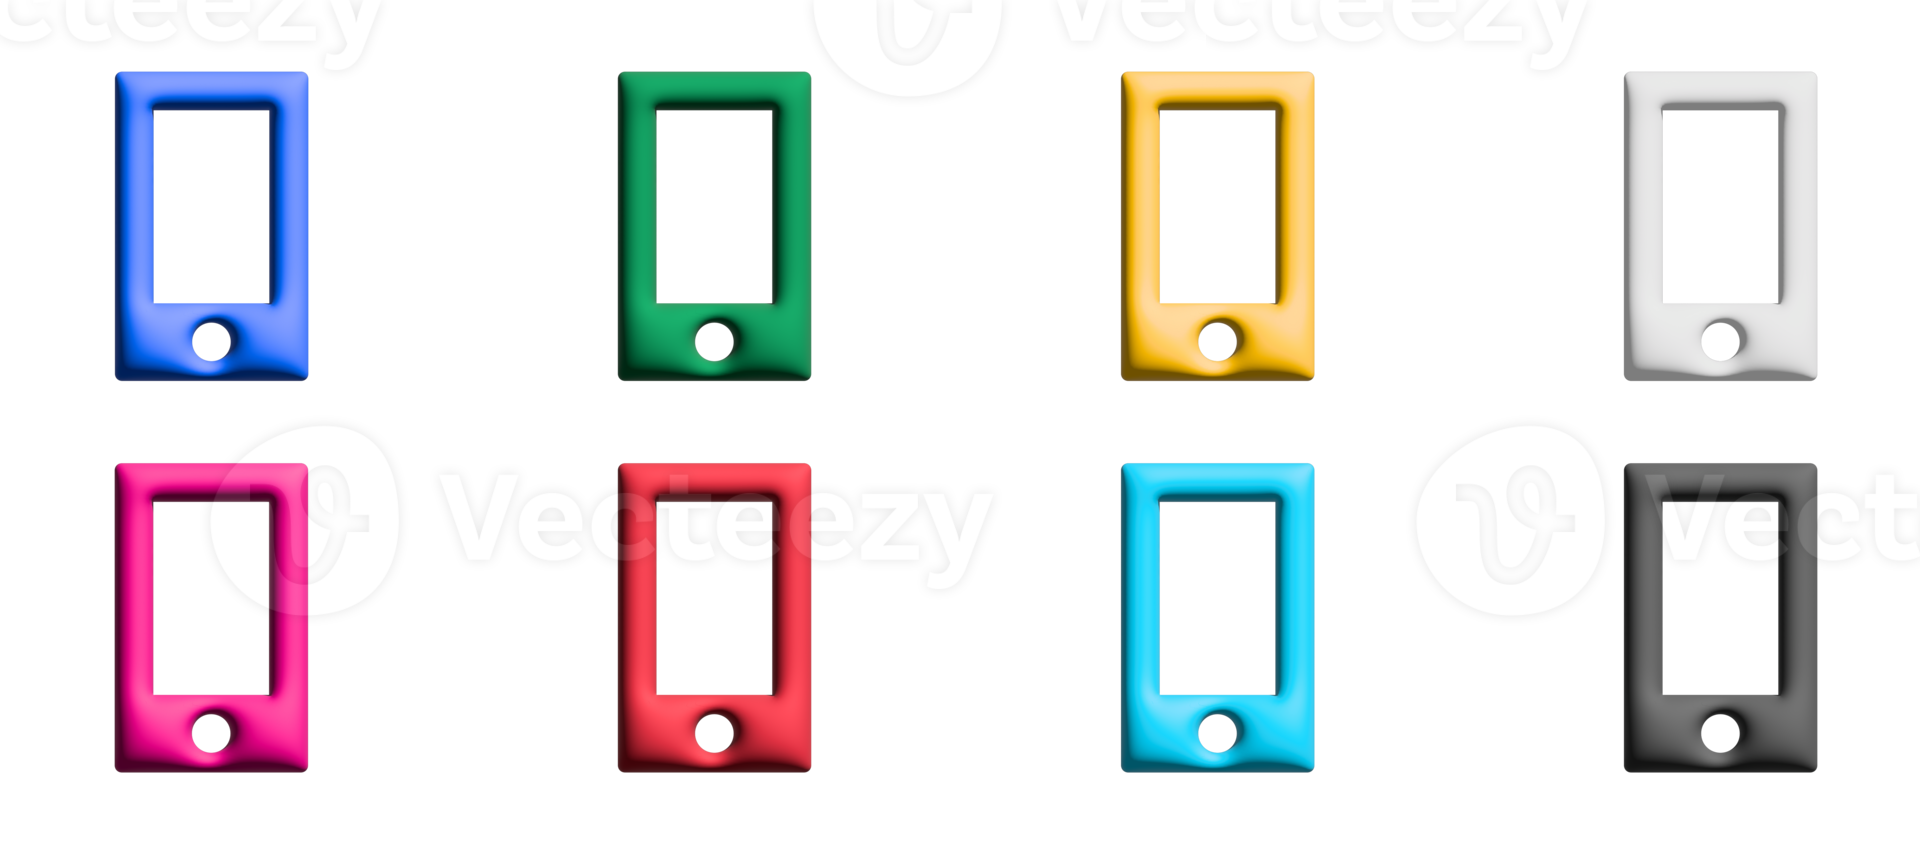 conjunto de iconos de teléfono, elementos gráficos de símbolos de colores png